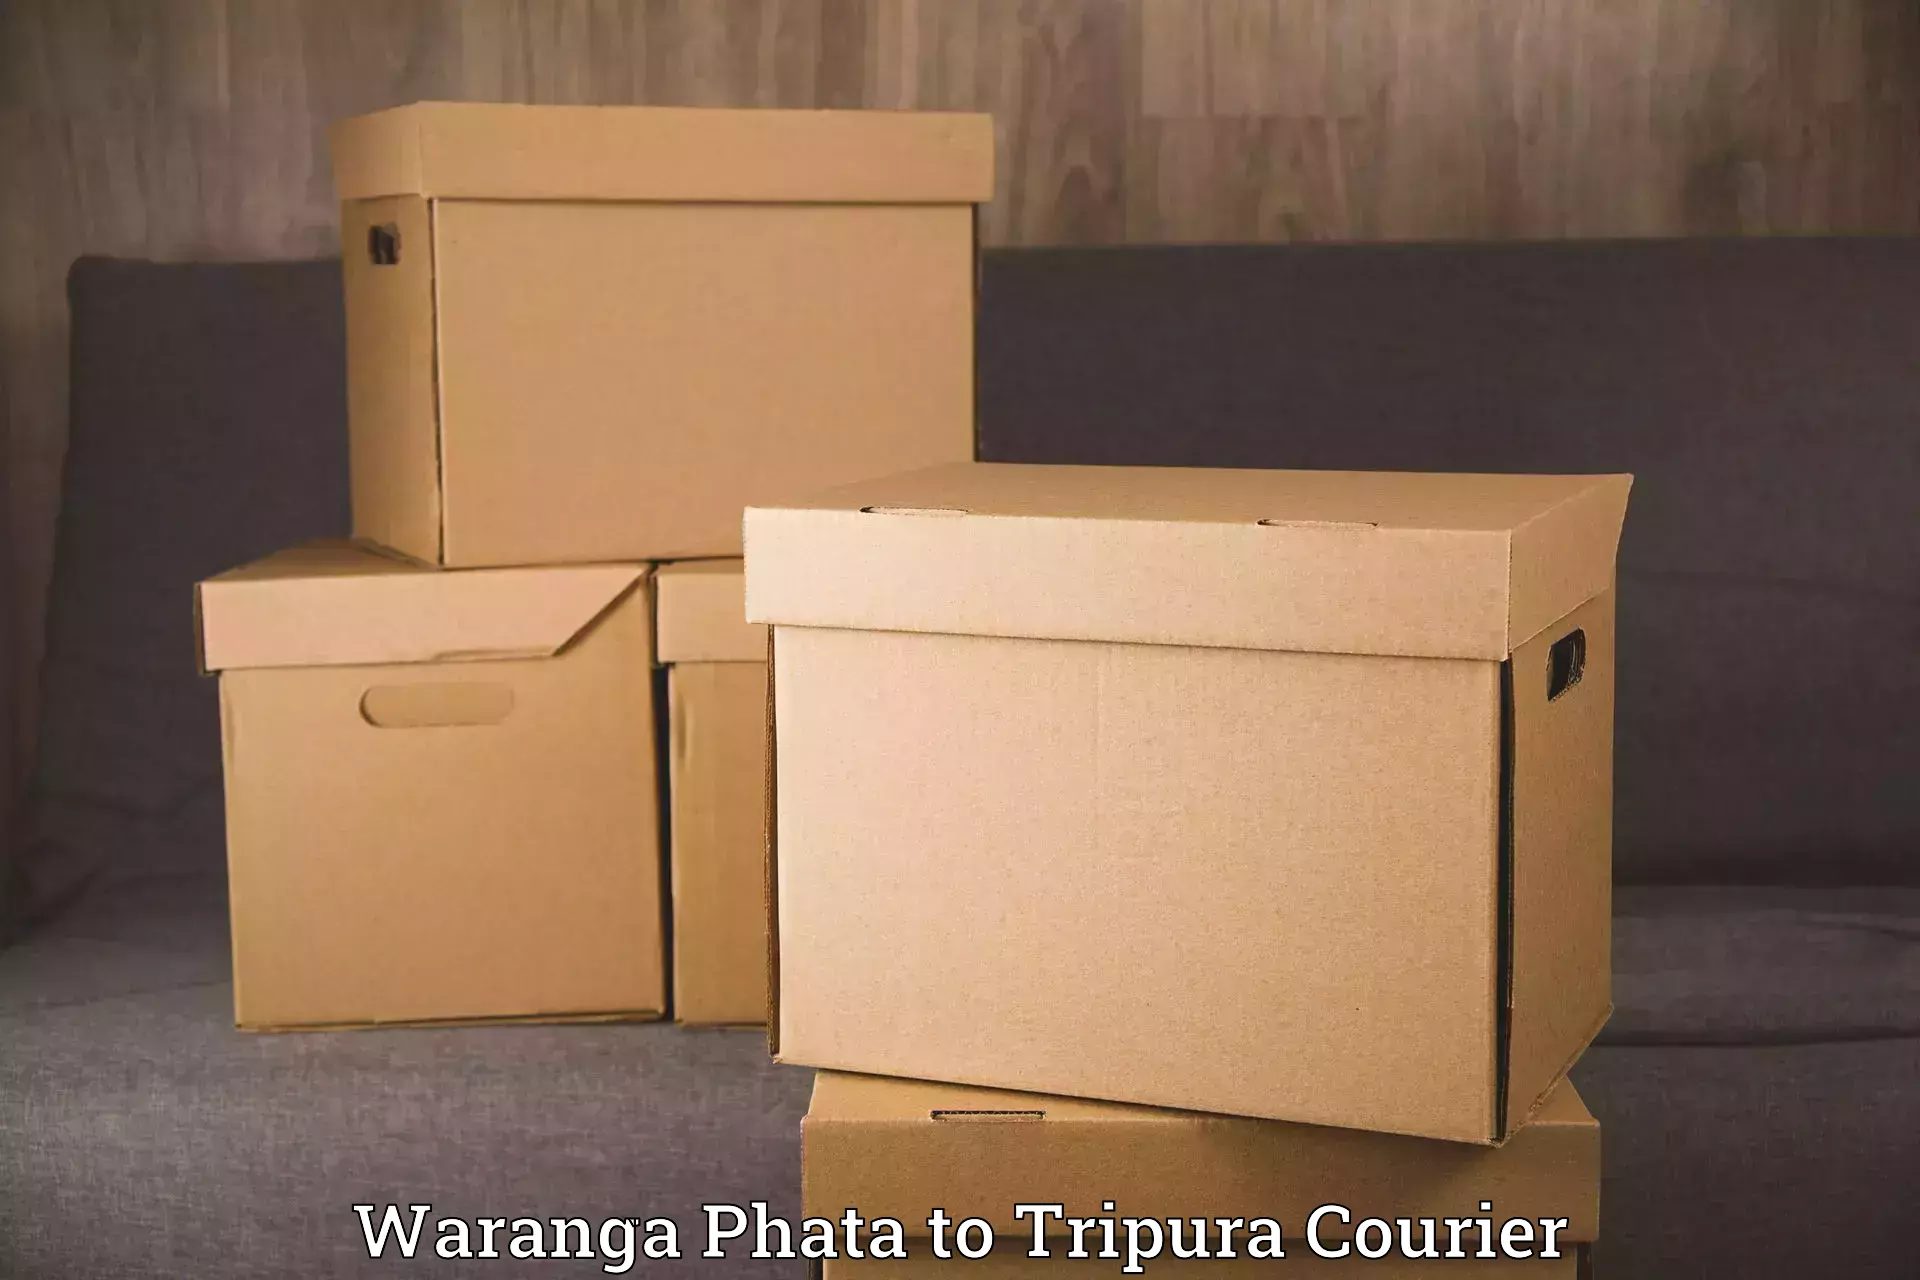 Trusted household movers Waranga Phata to Udaipur Tripura